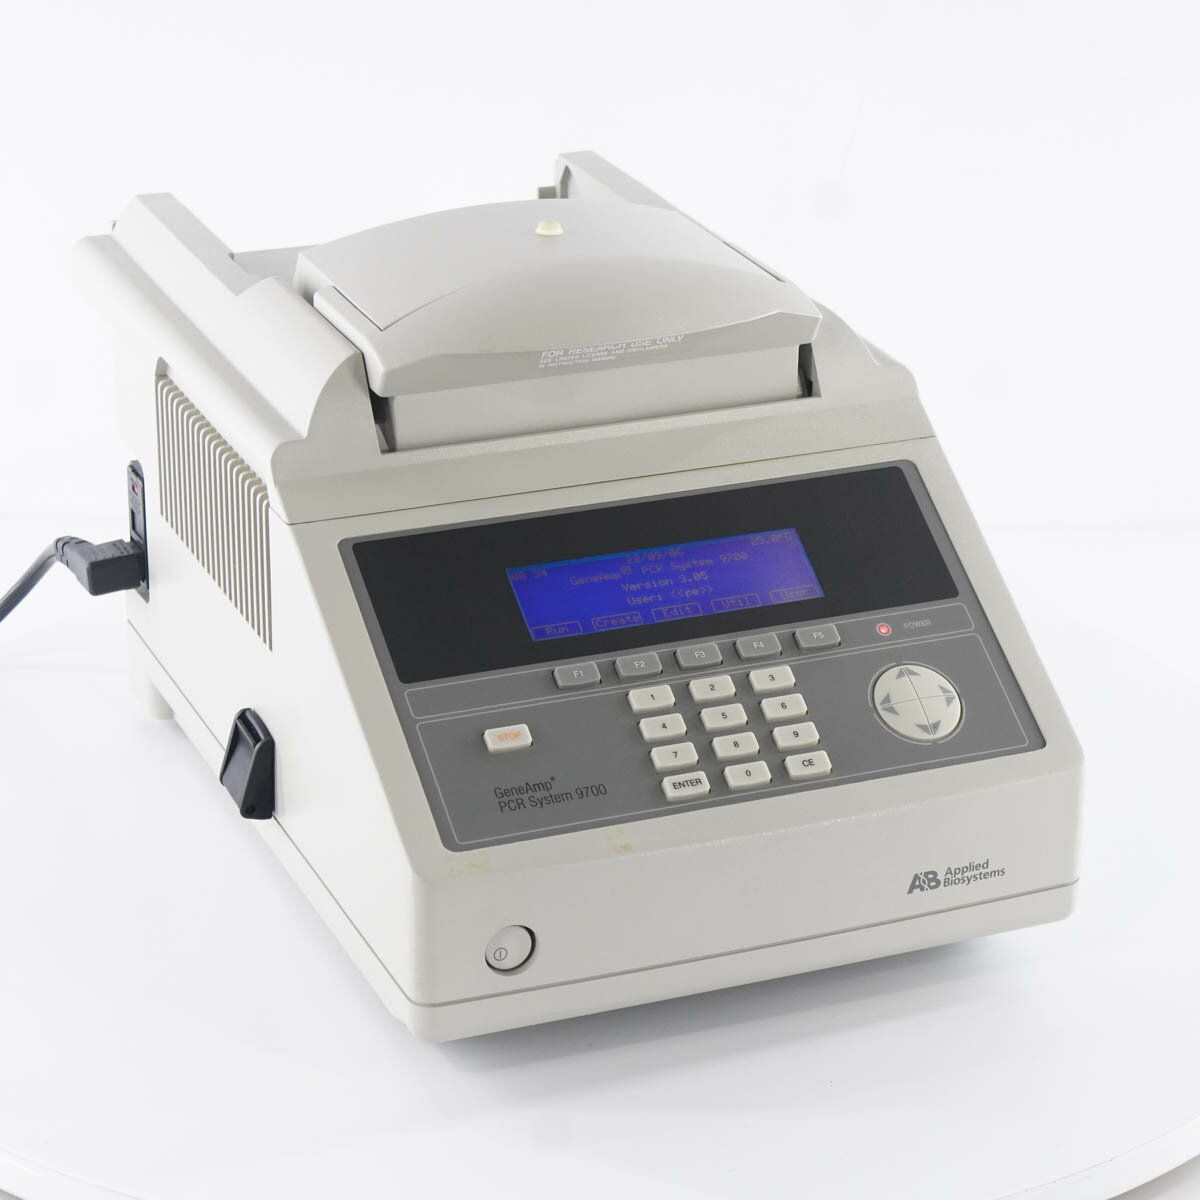 【中古】[DW]8日保証 Applied Biosystems 9700 GeneAmp PE PCR System Thermal Cycler サーマルサイクラー PCRシステム 電源コード [ST04261-0014]